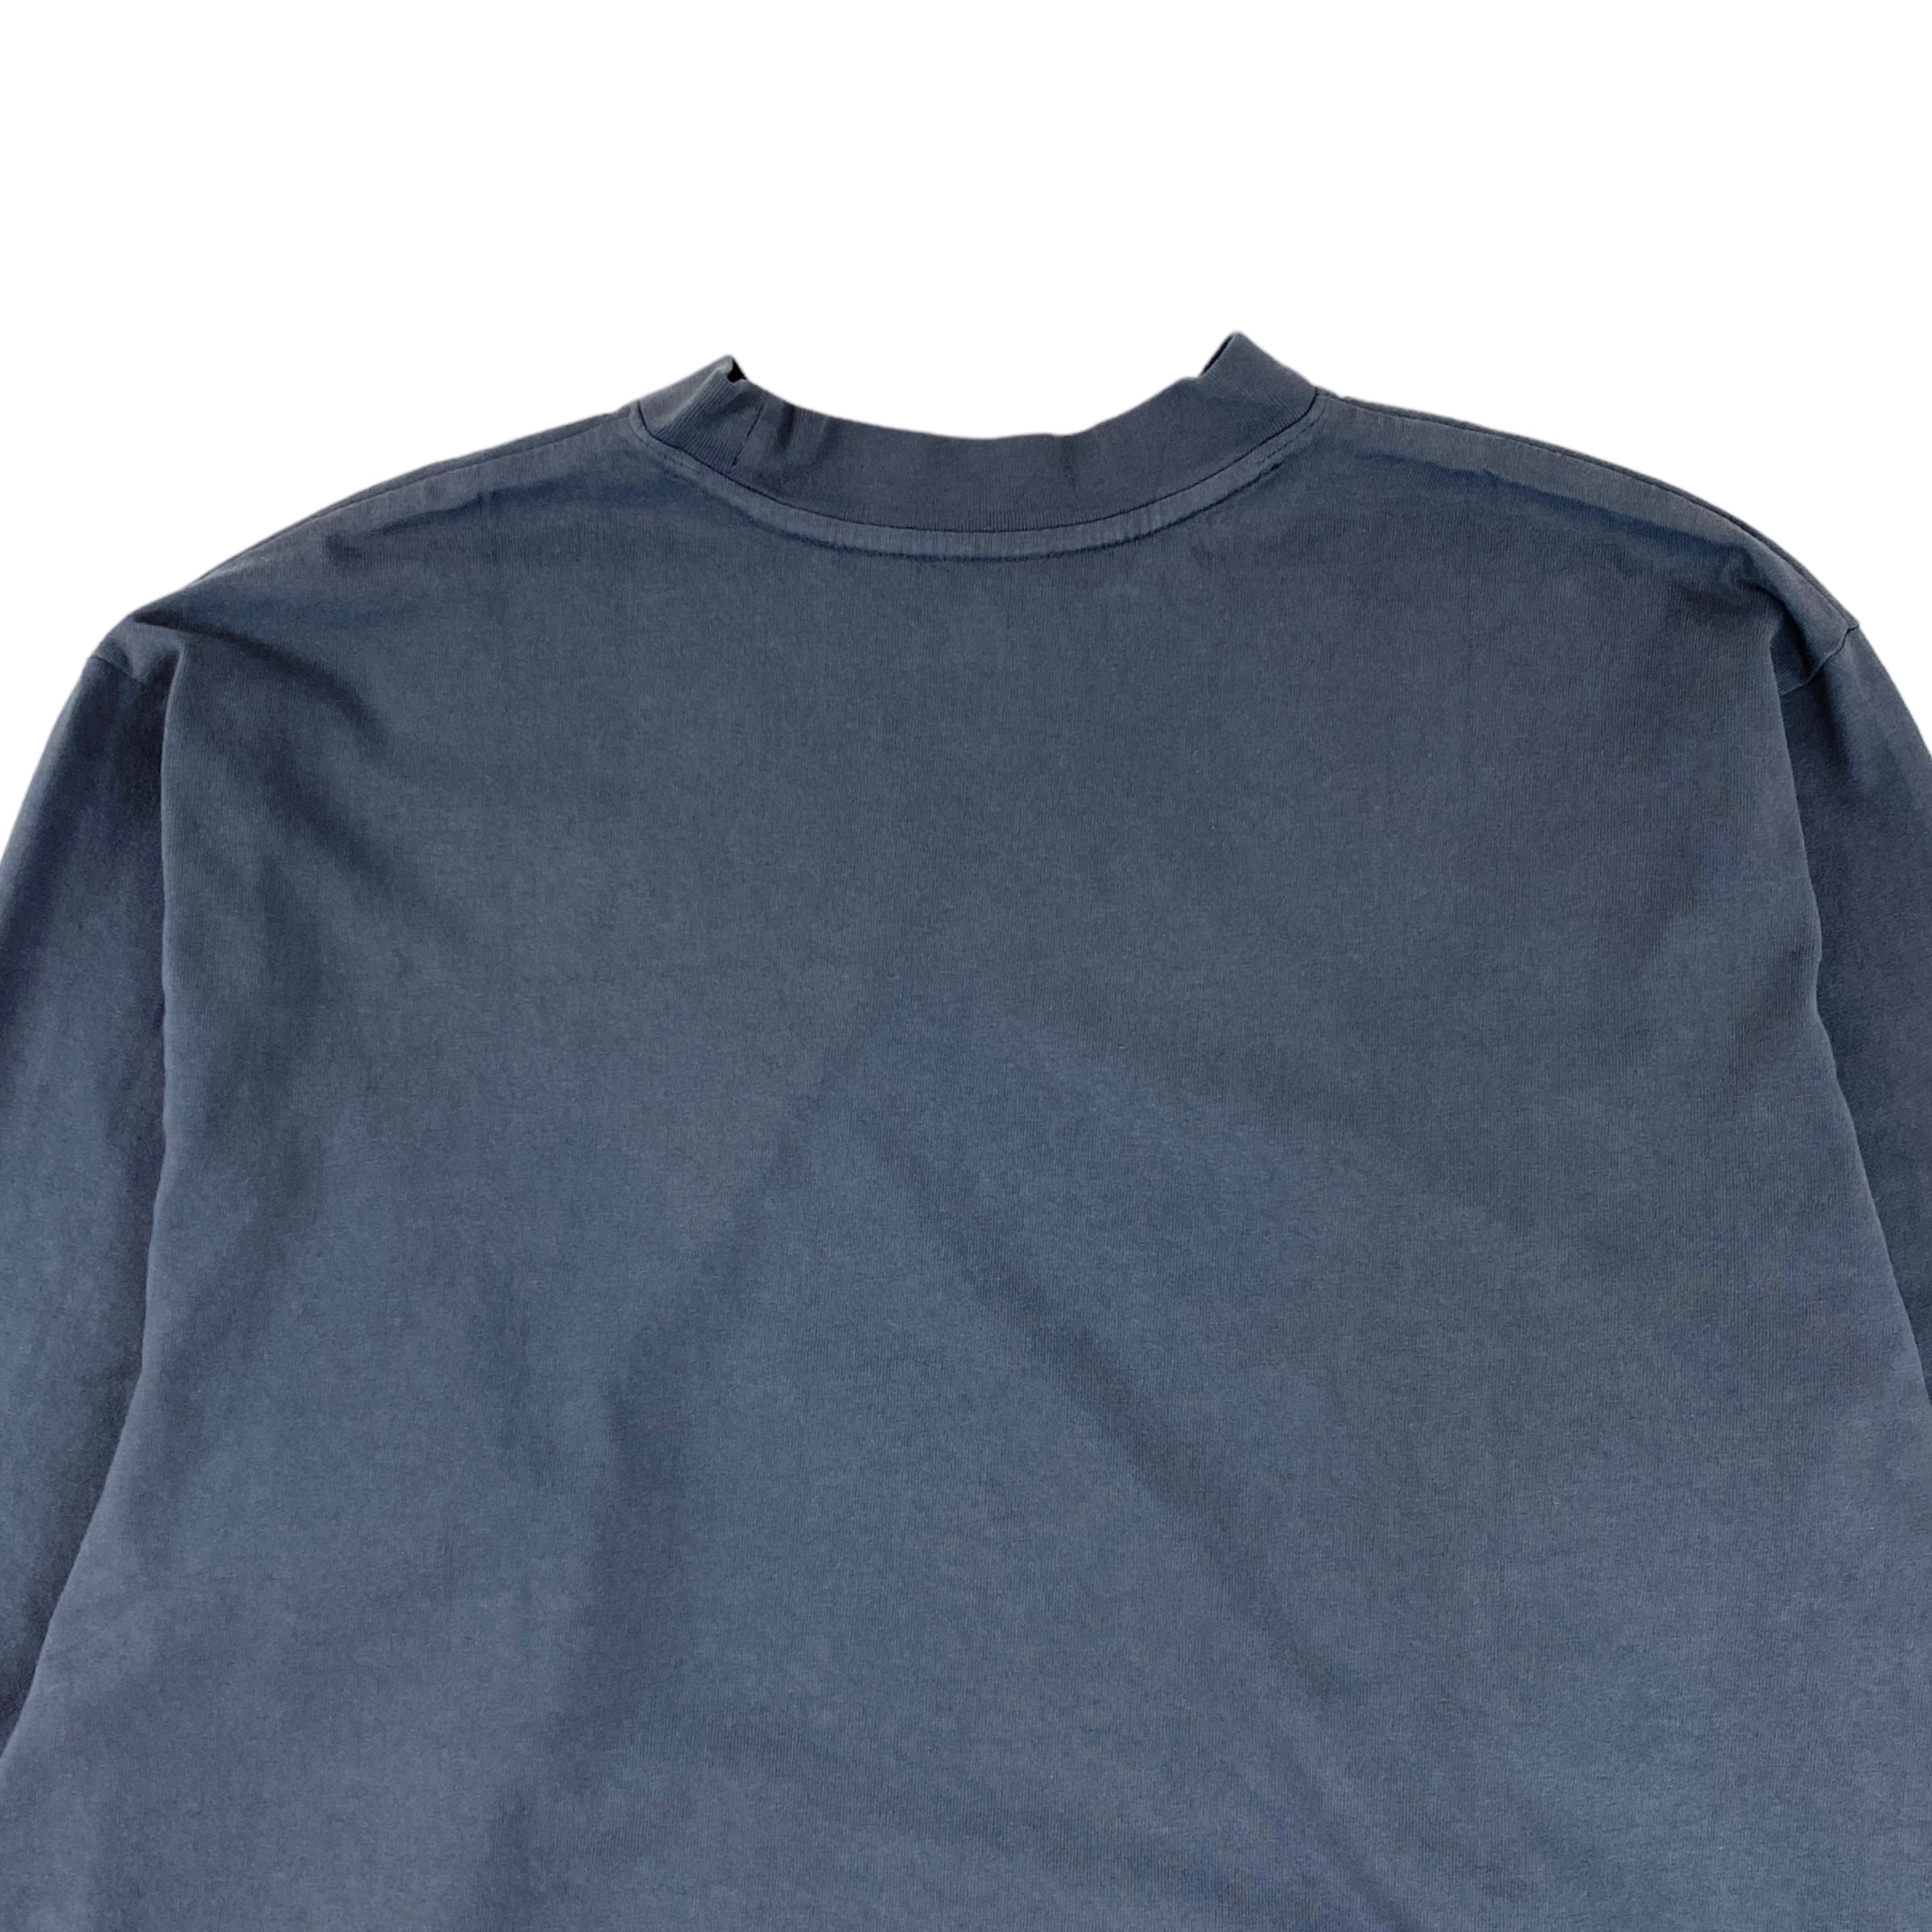 KANYE WEST Yeezy Rise As 1 Medium Long Sleeve Shirt lightly Used